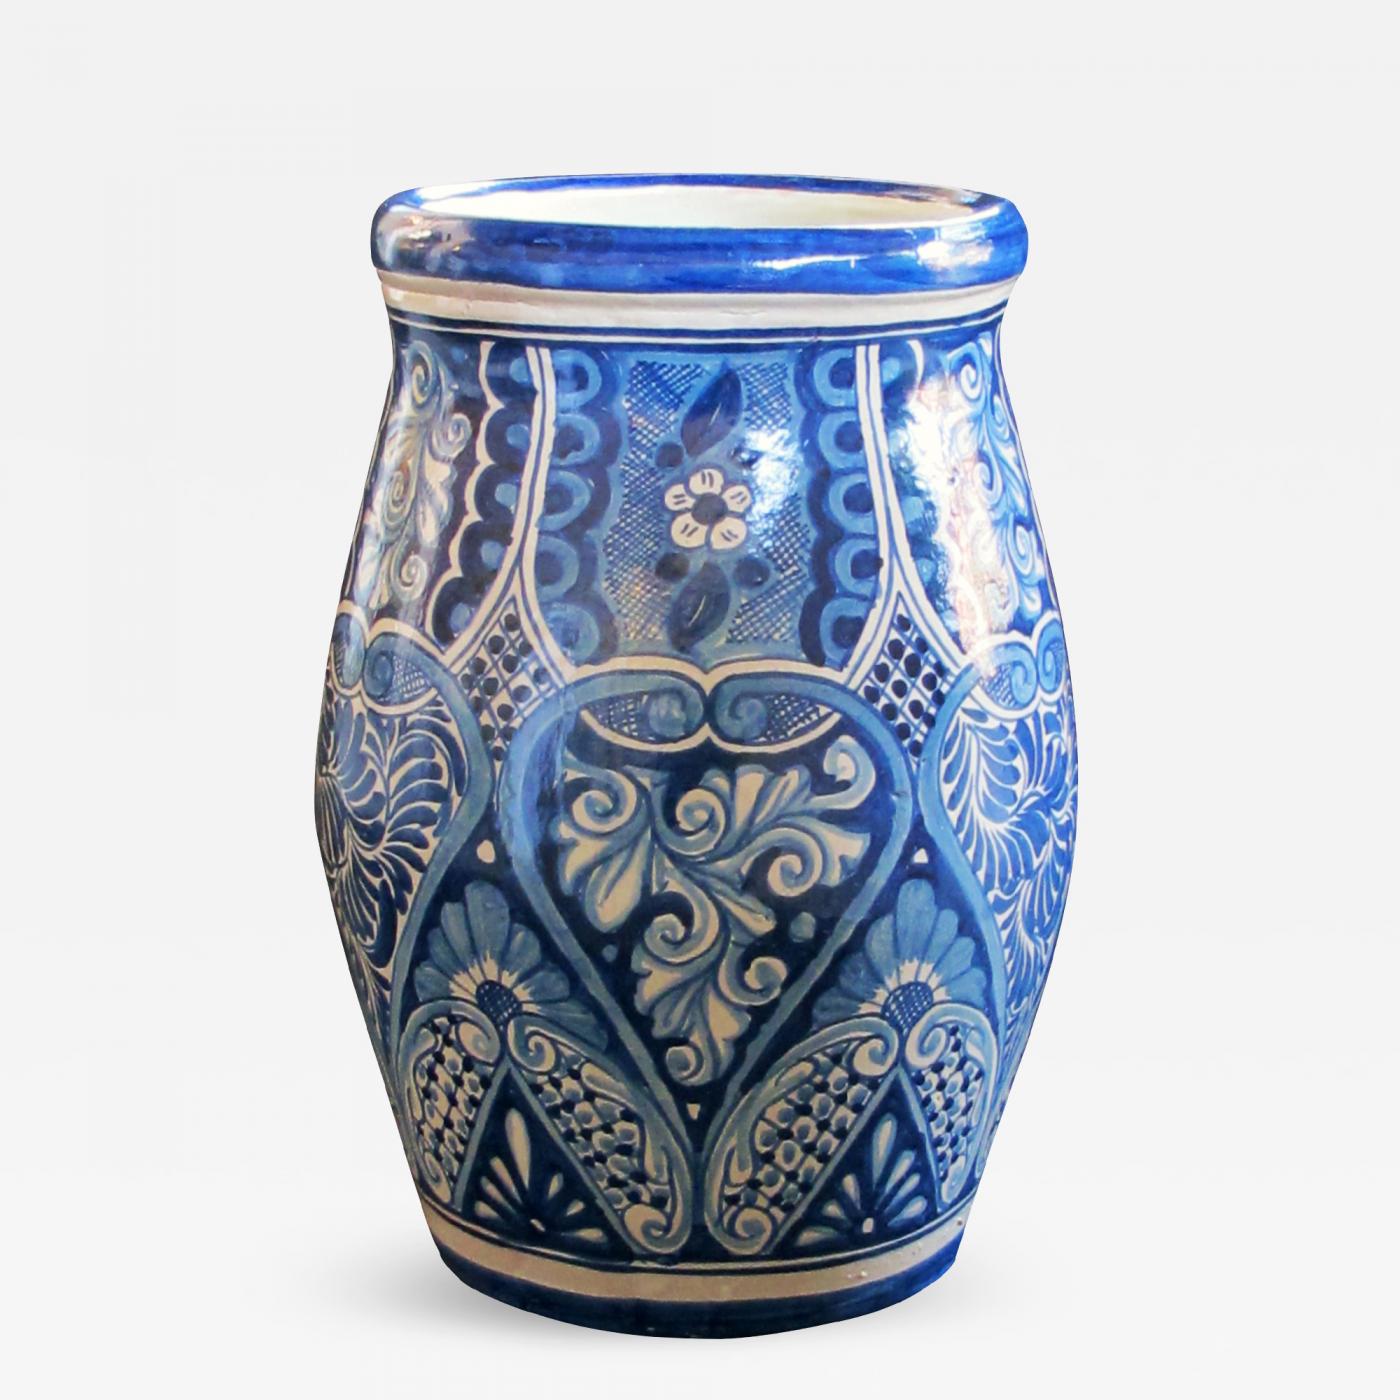 Blue and white Talavera pottery pot - Designs By Origin